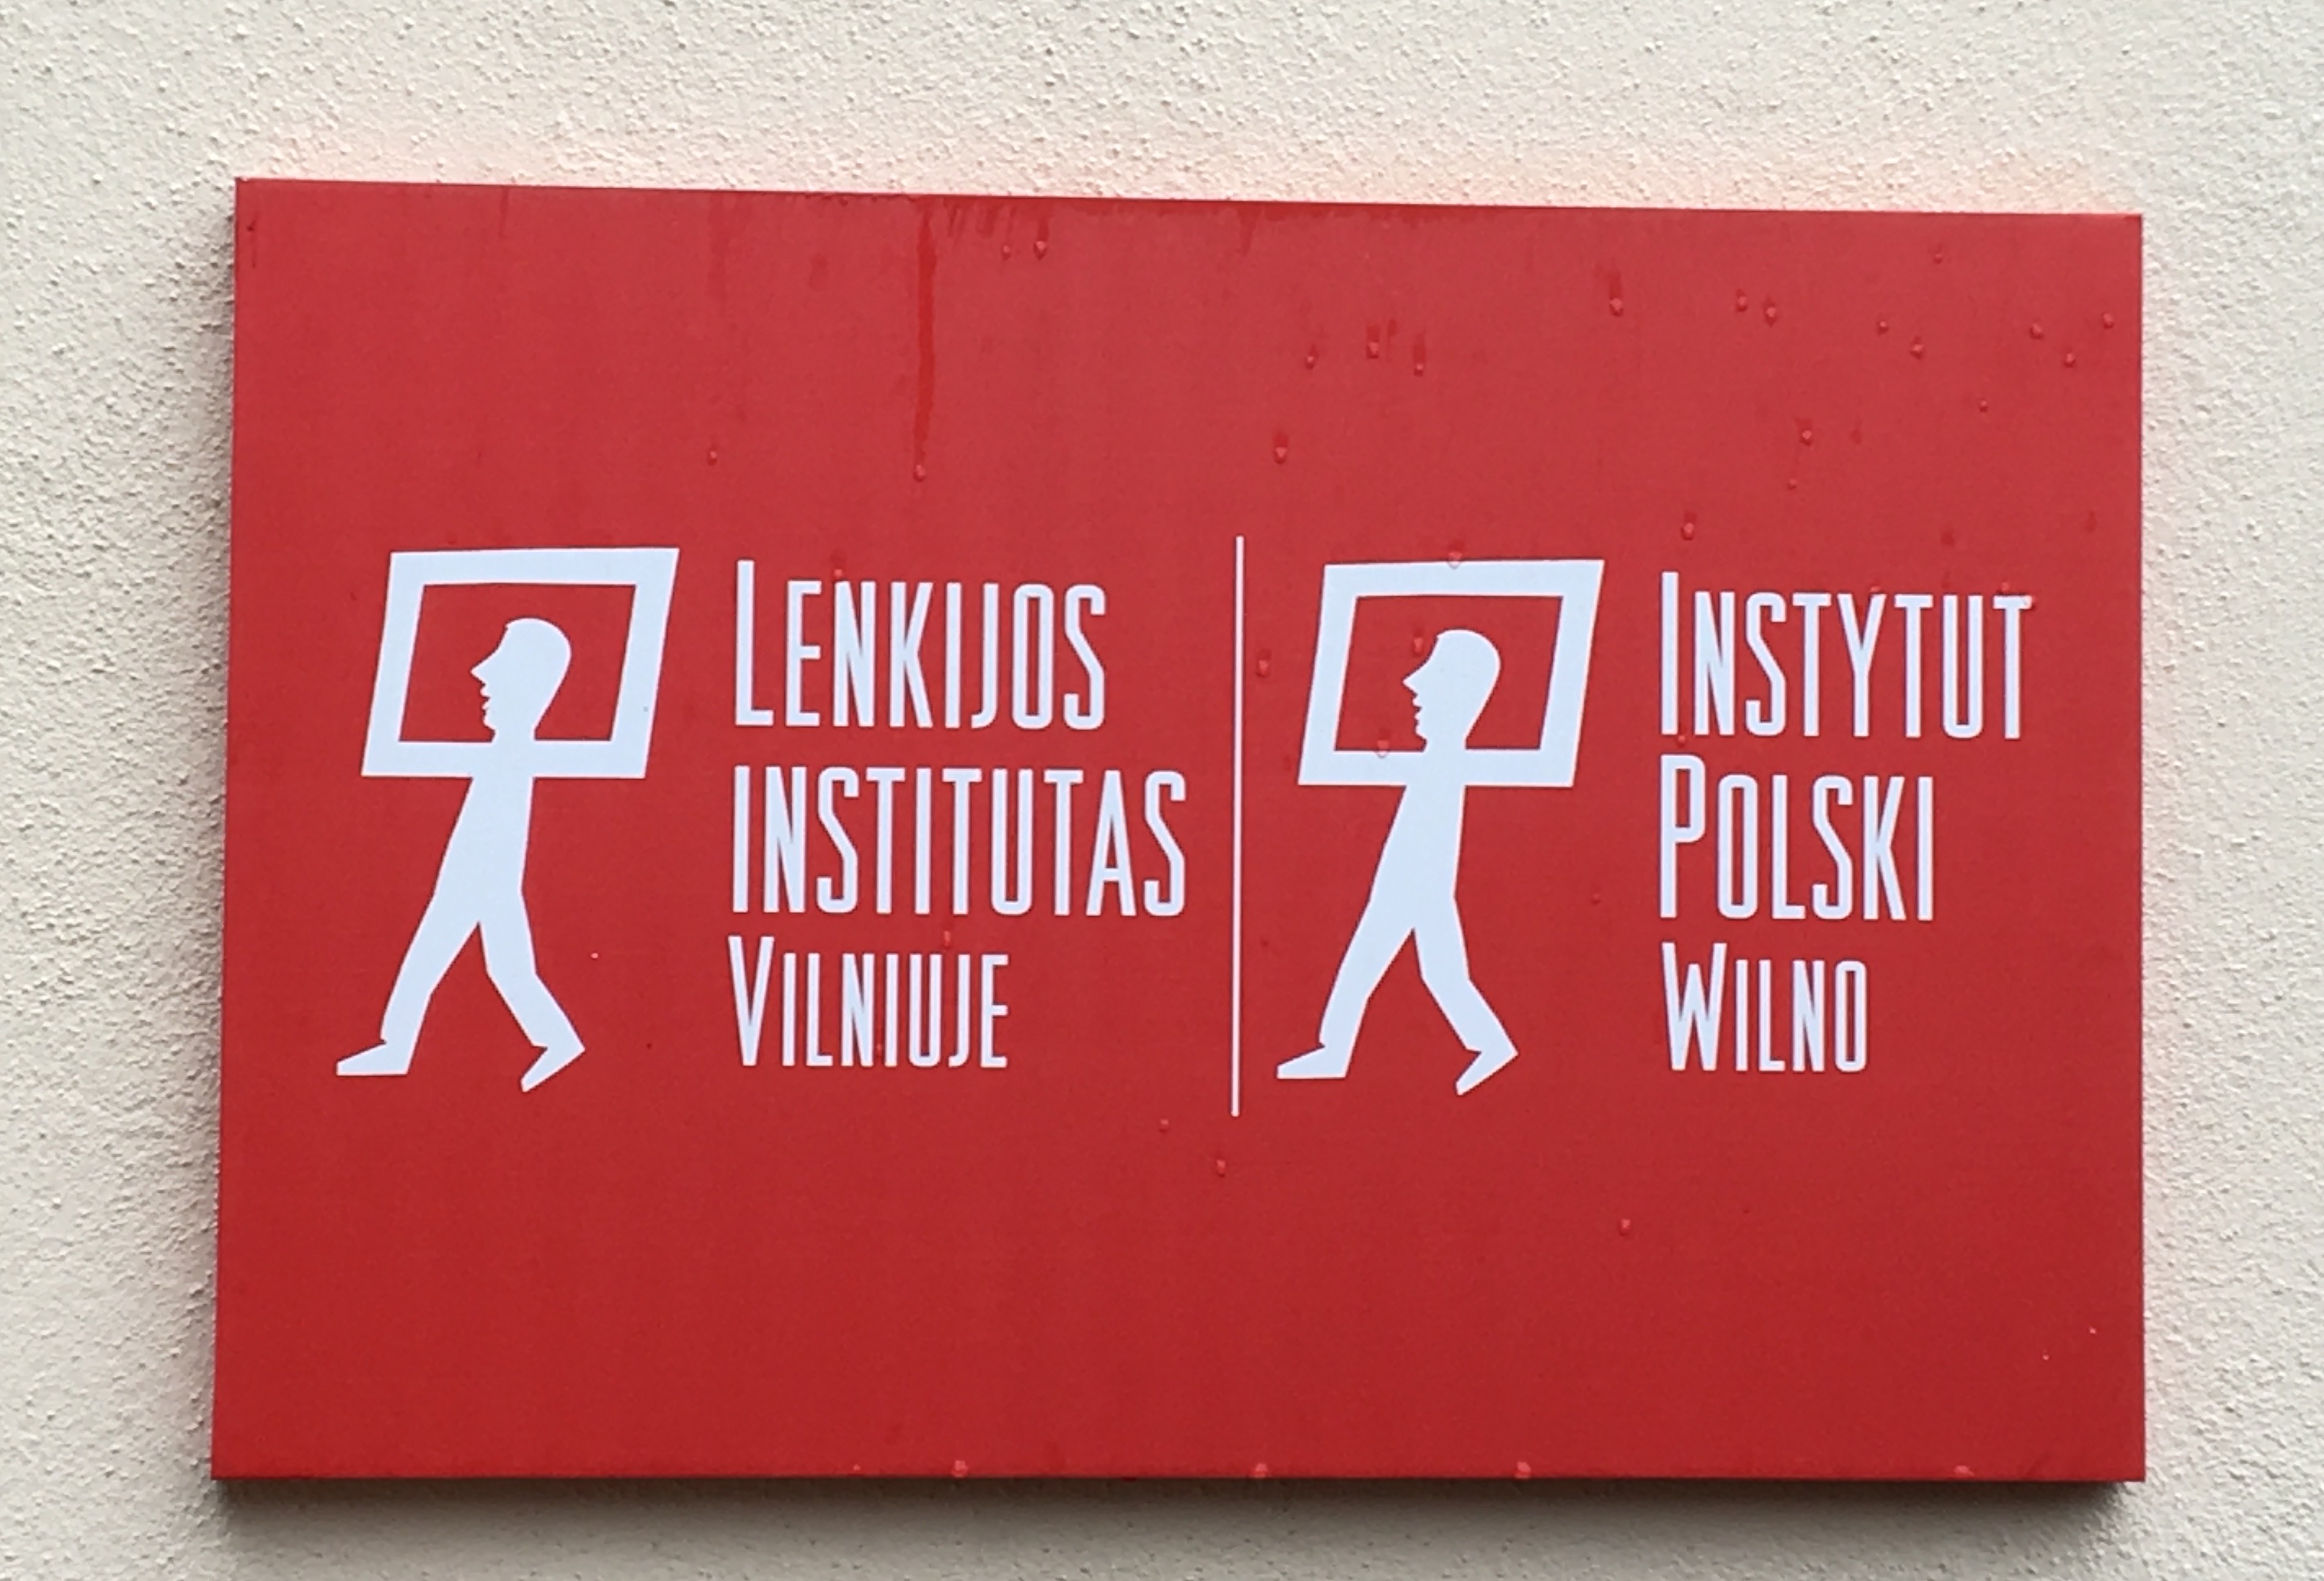 Polish Institute in Vilnius